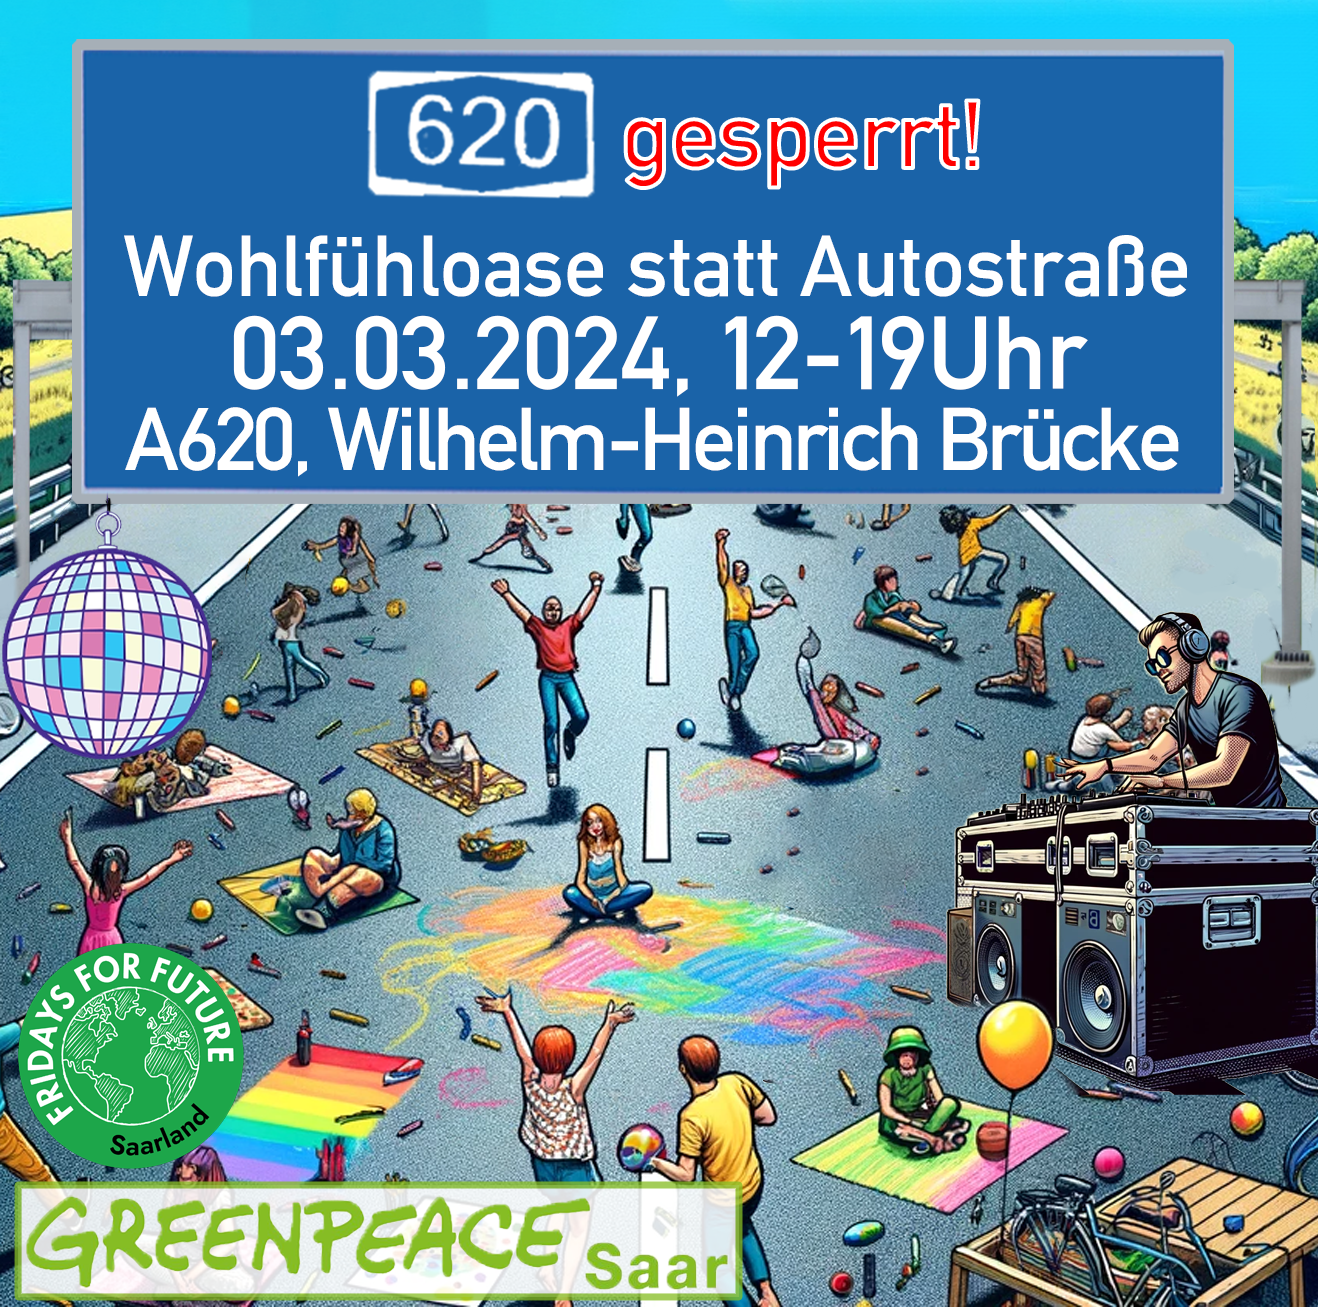 Read more about the article Pressemitteilung: Wohlfühloase statt Autostraße am Sonntag 3.3.2024 auf der A620